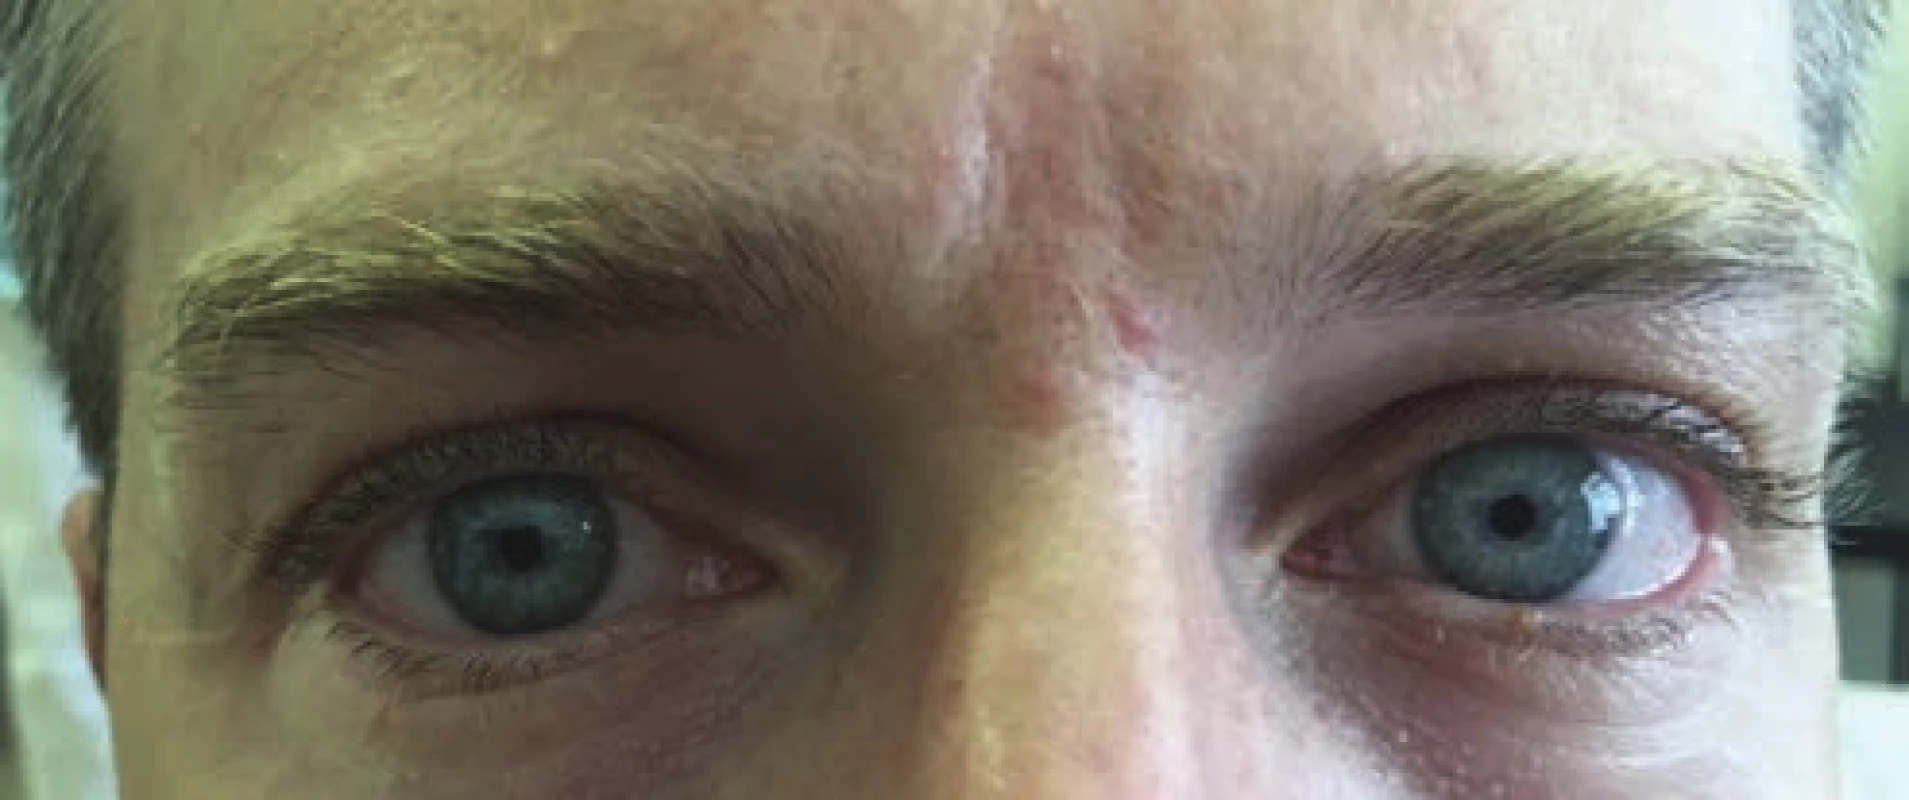 Pacient po podaní coll. pilocarpini 0,125 % gtt a následné zúženie zrenice na pravom oku 